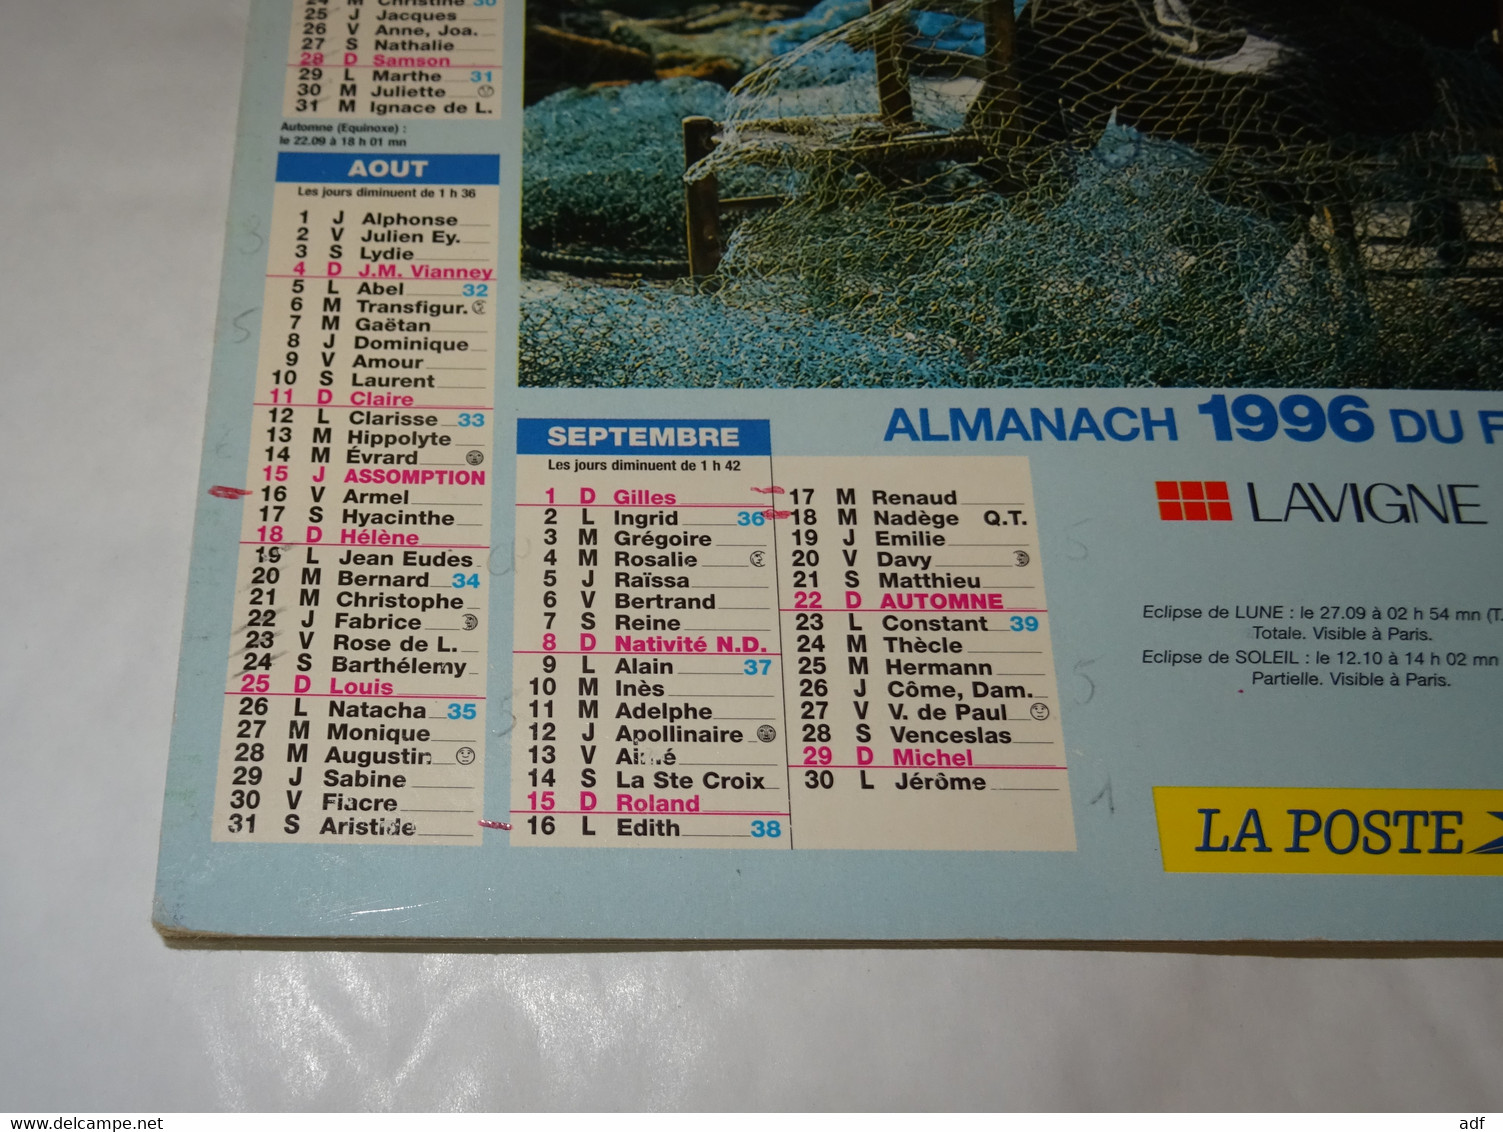 1996 ANNEE BISSEXTILE CALENDRIER ALMANACH DU FACTEUR, LA POSTE, PECHEUR, FILEUSE, LAVIGNE, MARNE 51